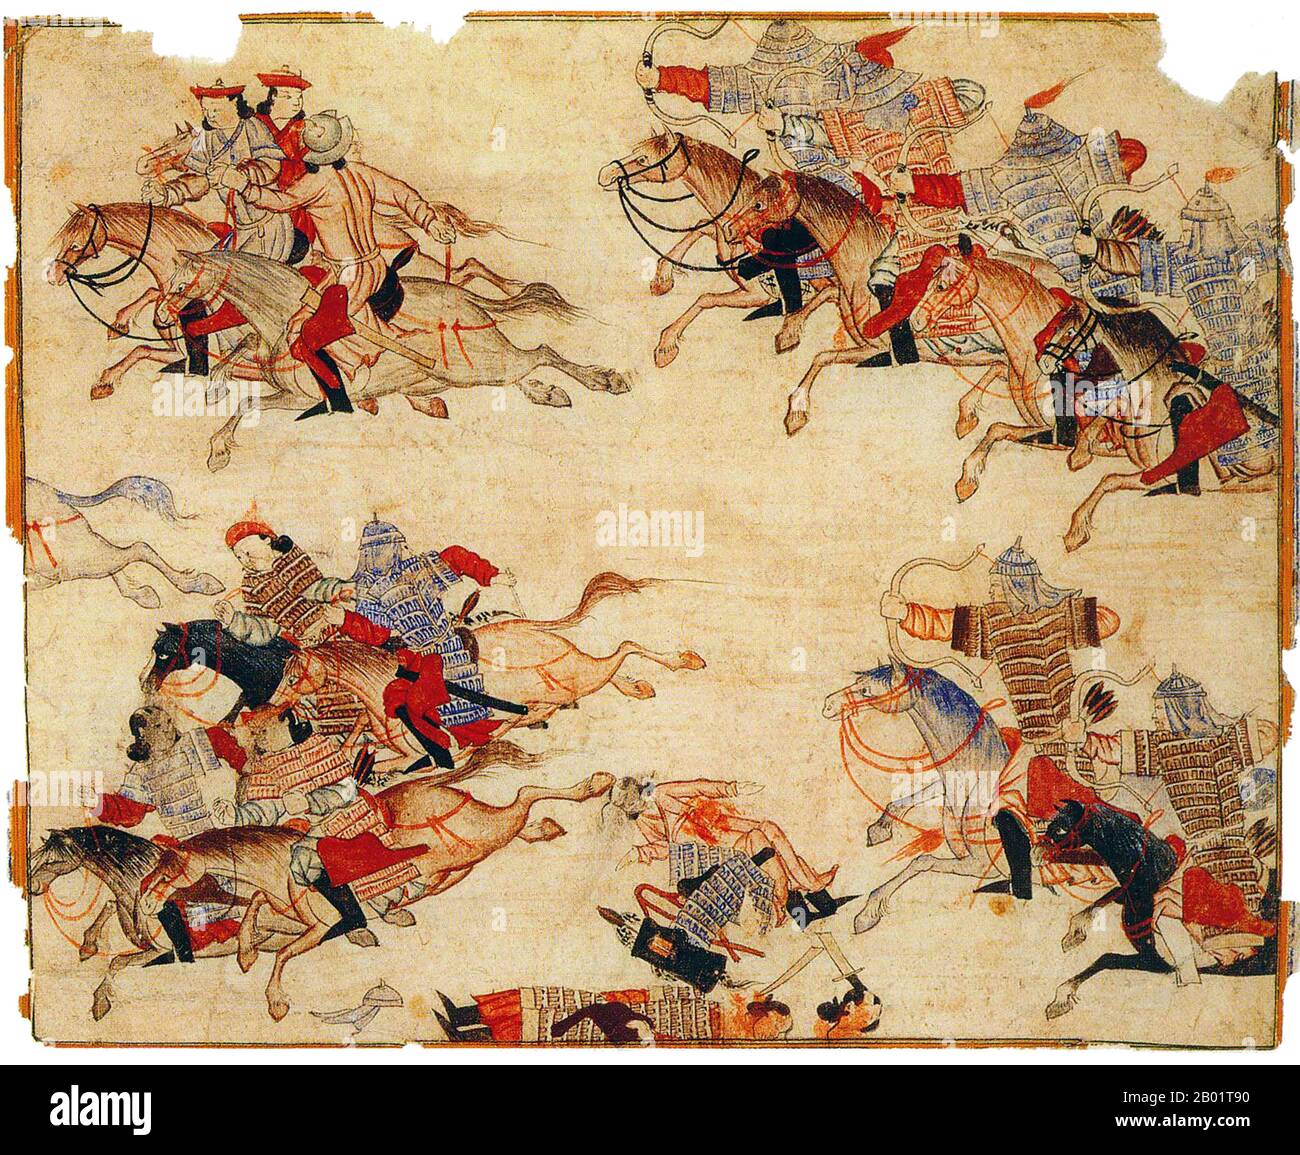 Iran/Persia: Una battaglia di cavalleria. I mongoli attaccano da destra. Acquerello dipinto di Rashid al-DIN, Jami al-Tawarikh, c. 1305 d.C. Il Jāmi' al-tawārīkh ("Compendio delle Cronache") o storia universale è un'opera di letteratura e storia iraniana scritta da Rashid-al-DIN Hamadani all'inizio del XIV secolo. Foto Stock